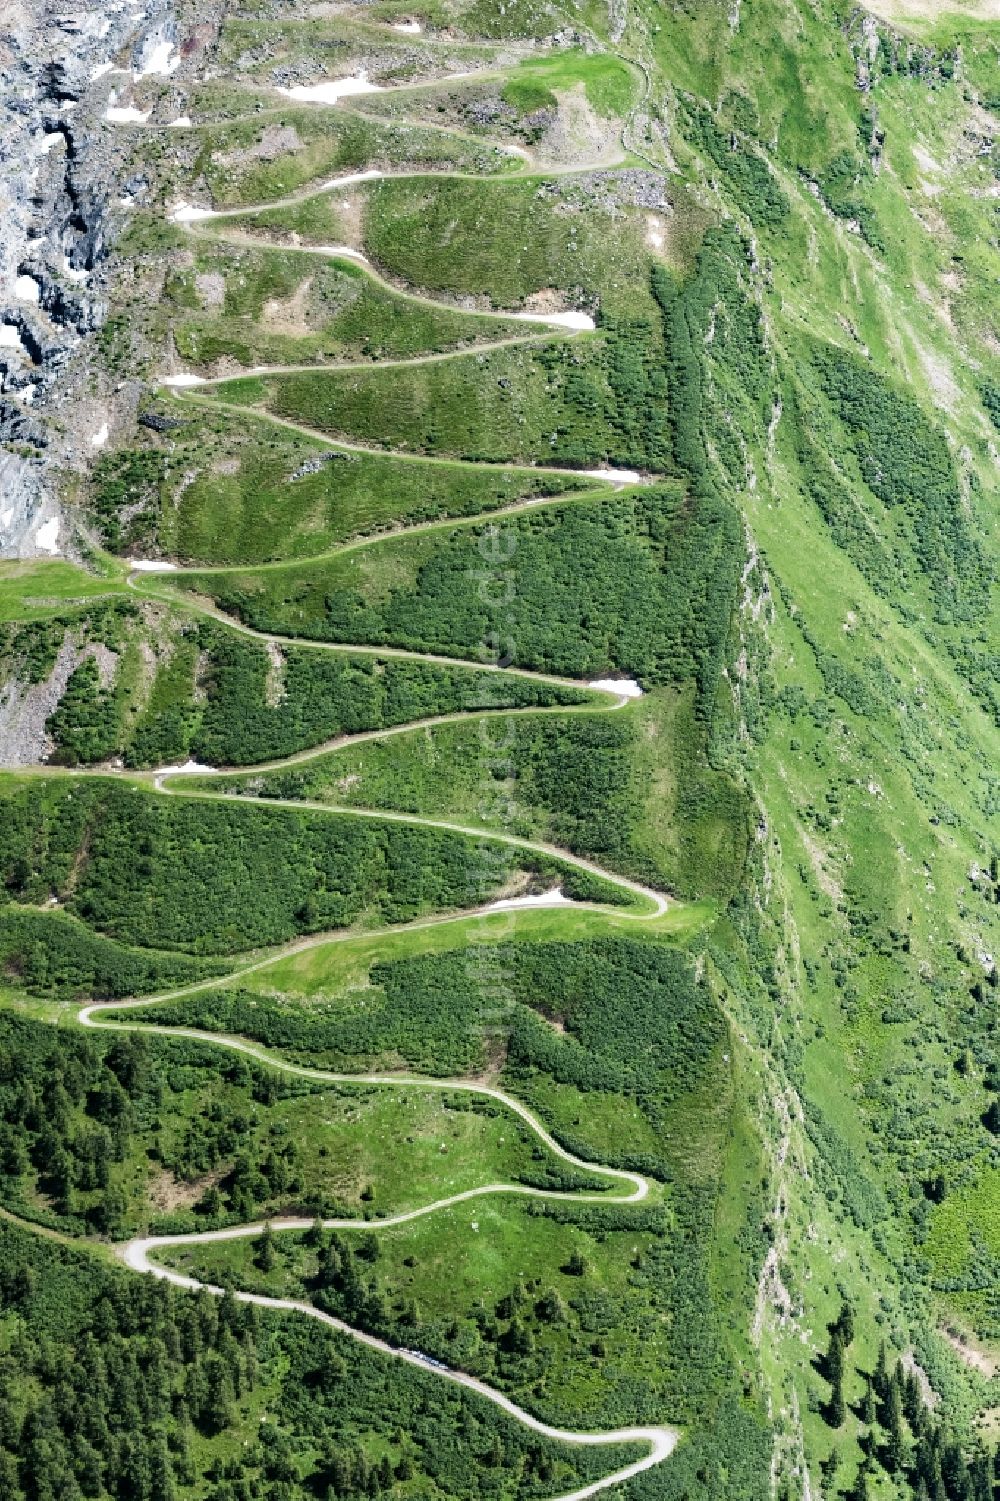 Luftaufnahme Mittersill - Serpentinenförmiger Kurvenverlauf einer Straßenführung in Mittersill in Salzburg, Österreich